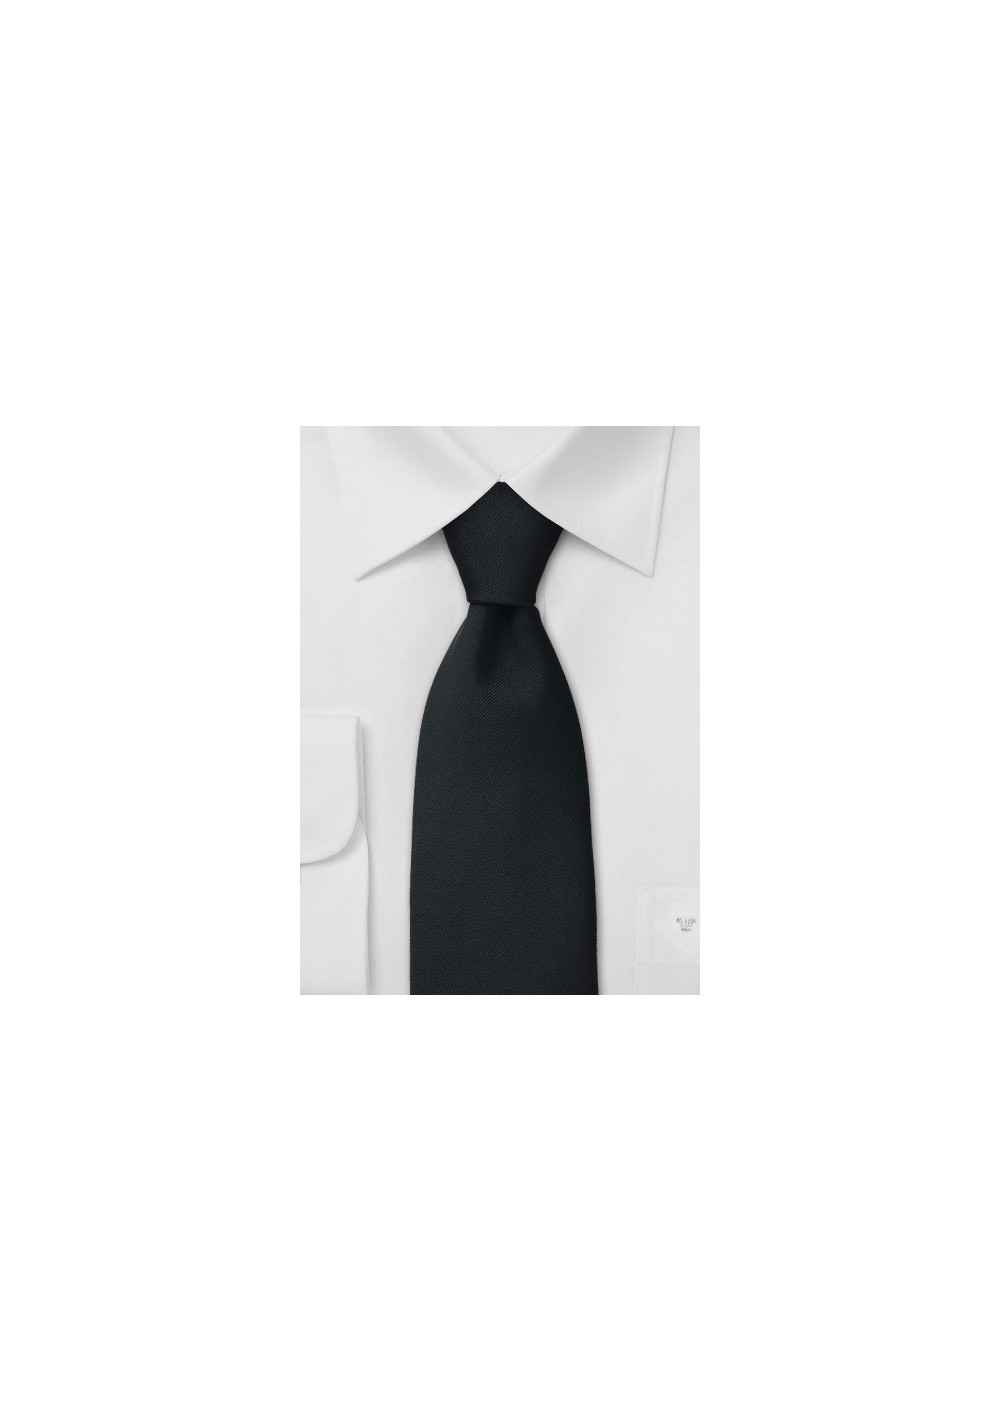 Solid color black tie -  Silk necktie in midnight black